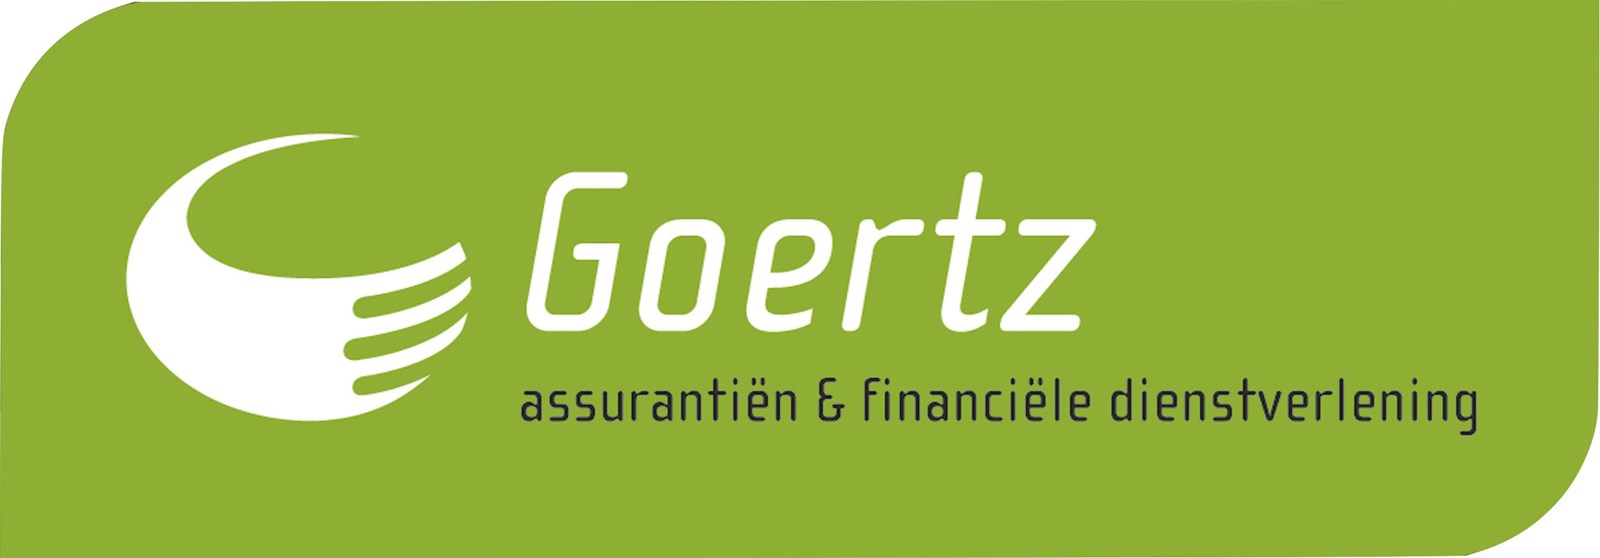 Afbeelding van Goertz assurantiën & financiële dienstverlening